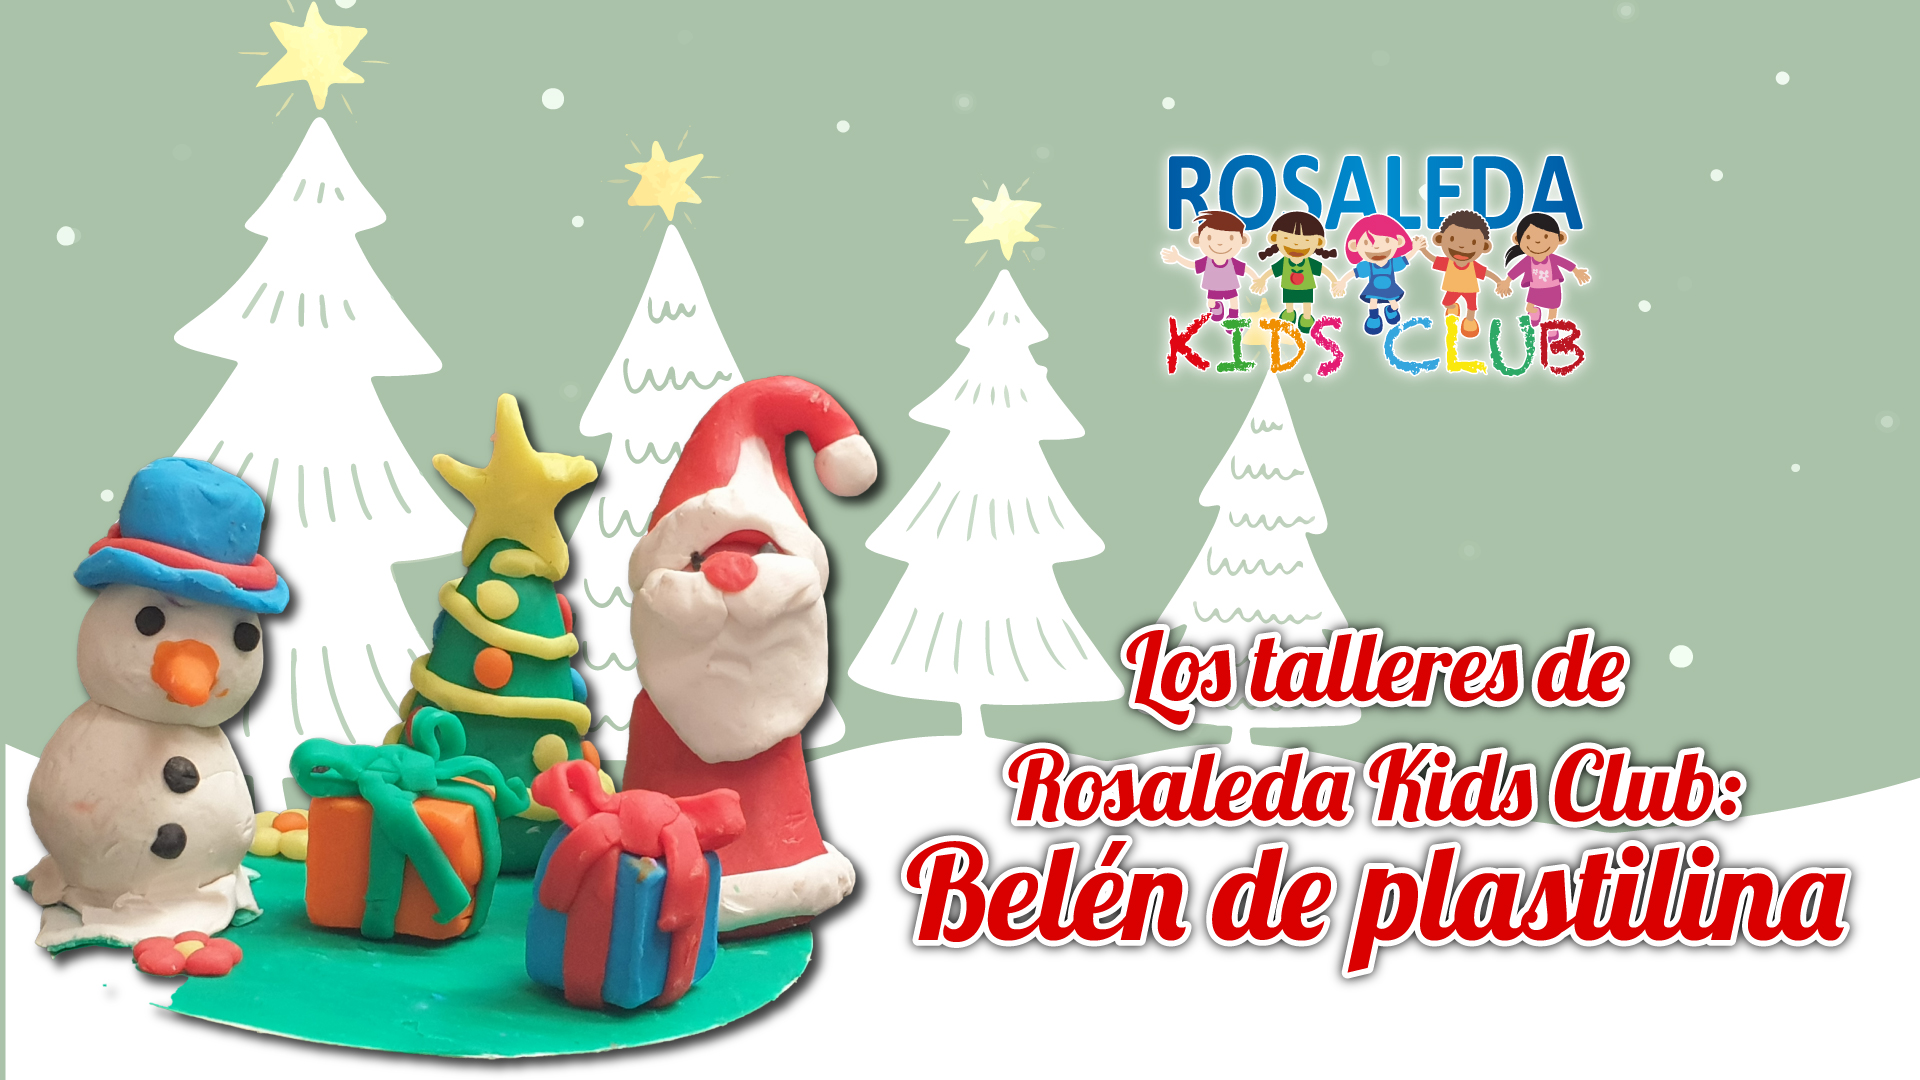 Los talleres de Rosaleda Kids Club: figuras de plastilina para el Belén